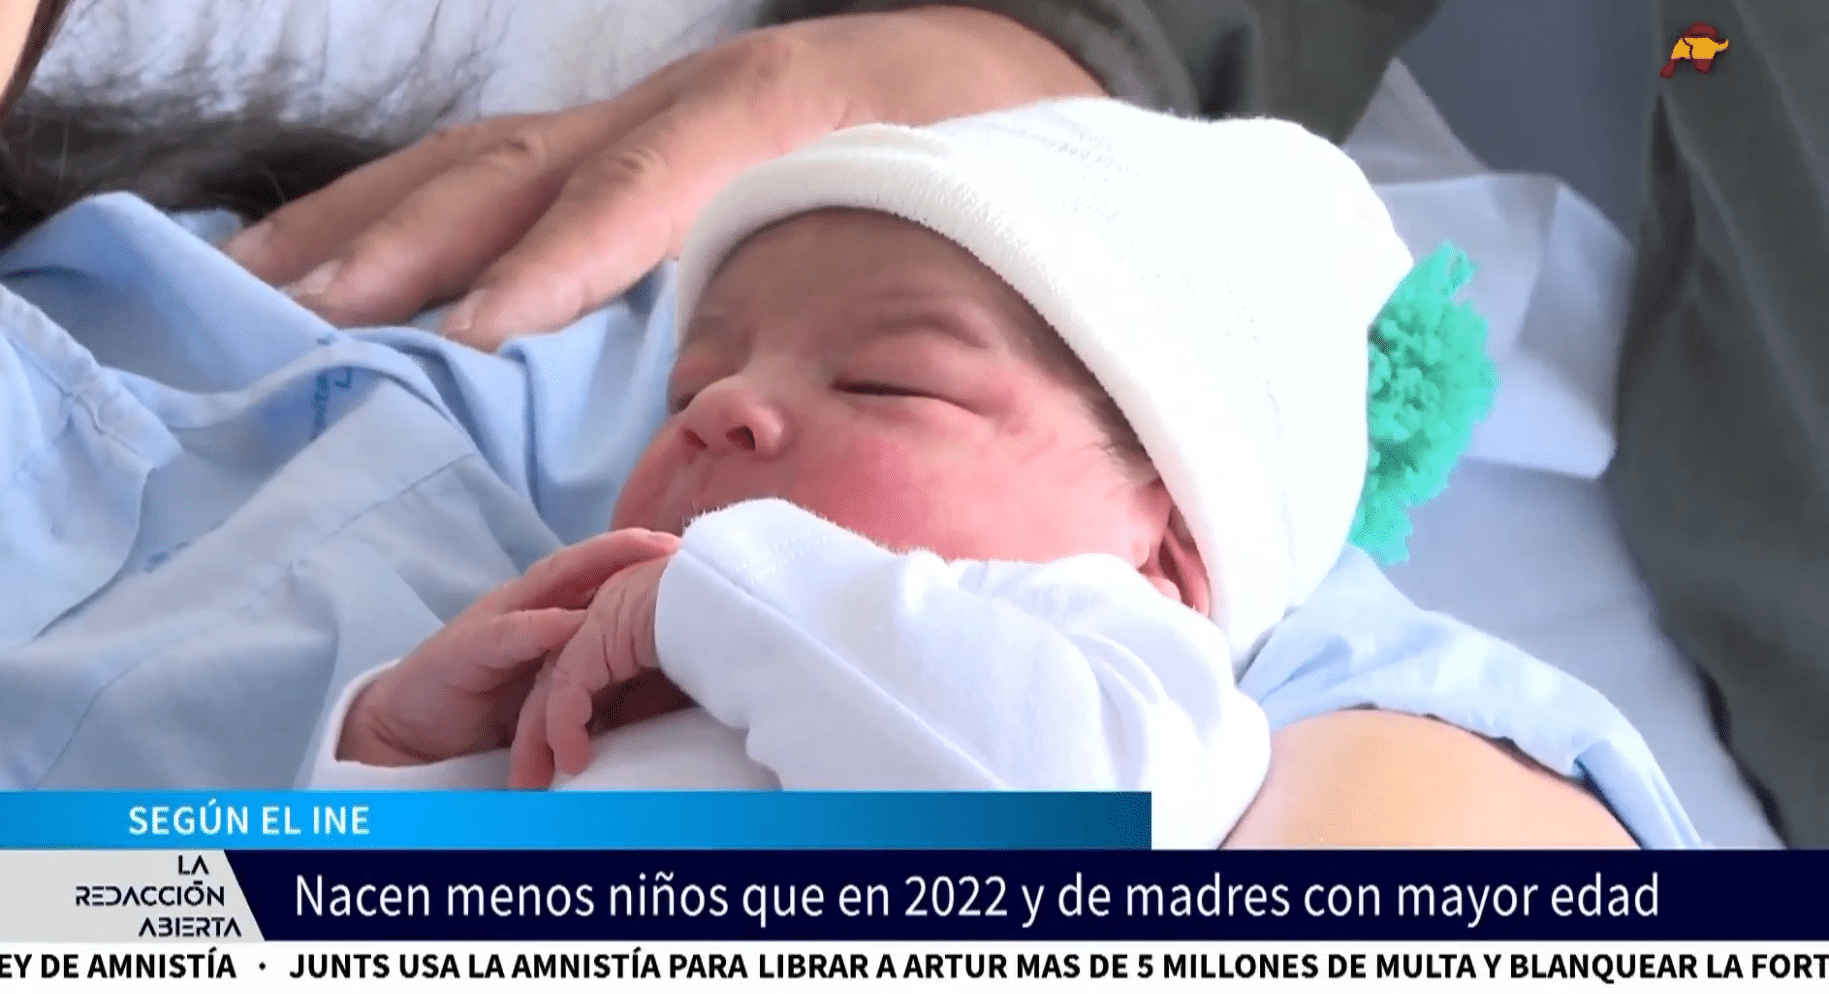  Nacen menos niños en España y de madres más mayores